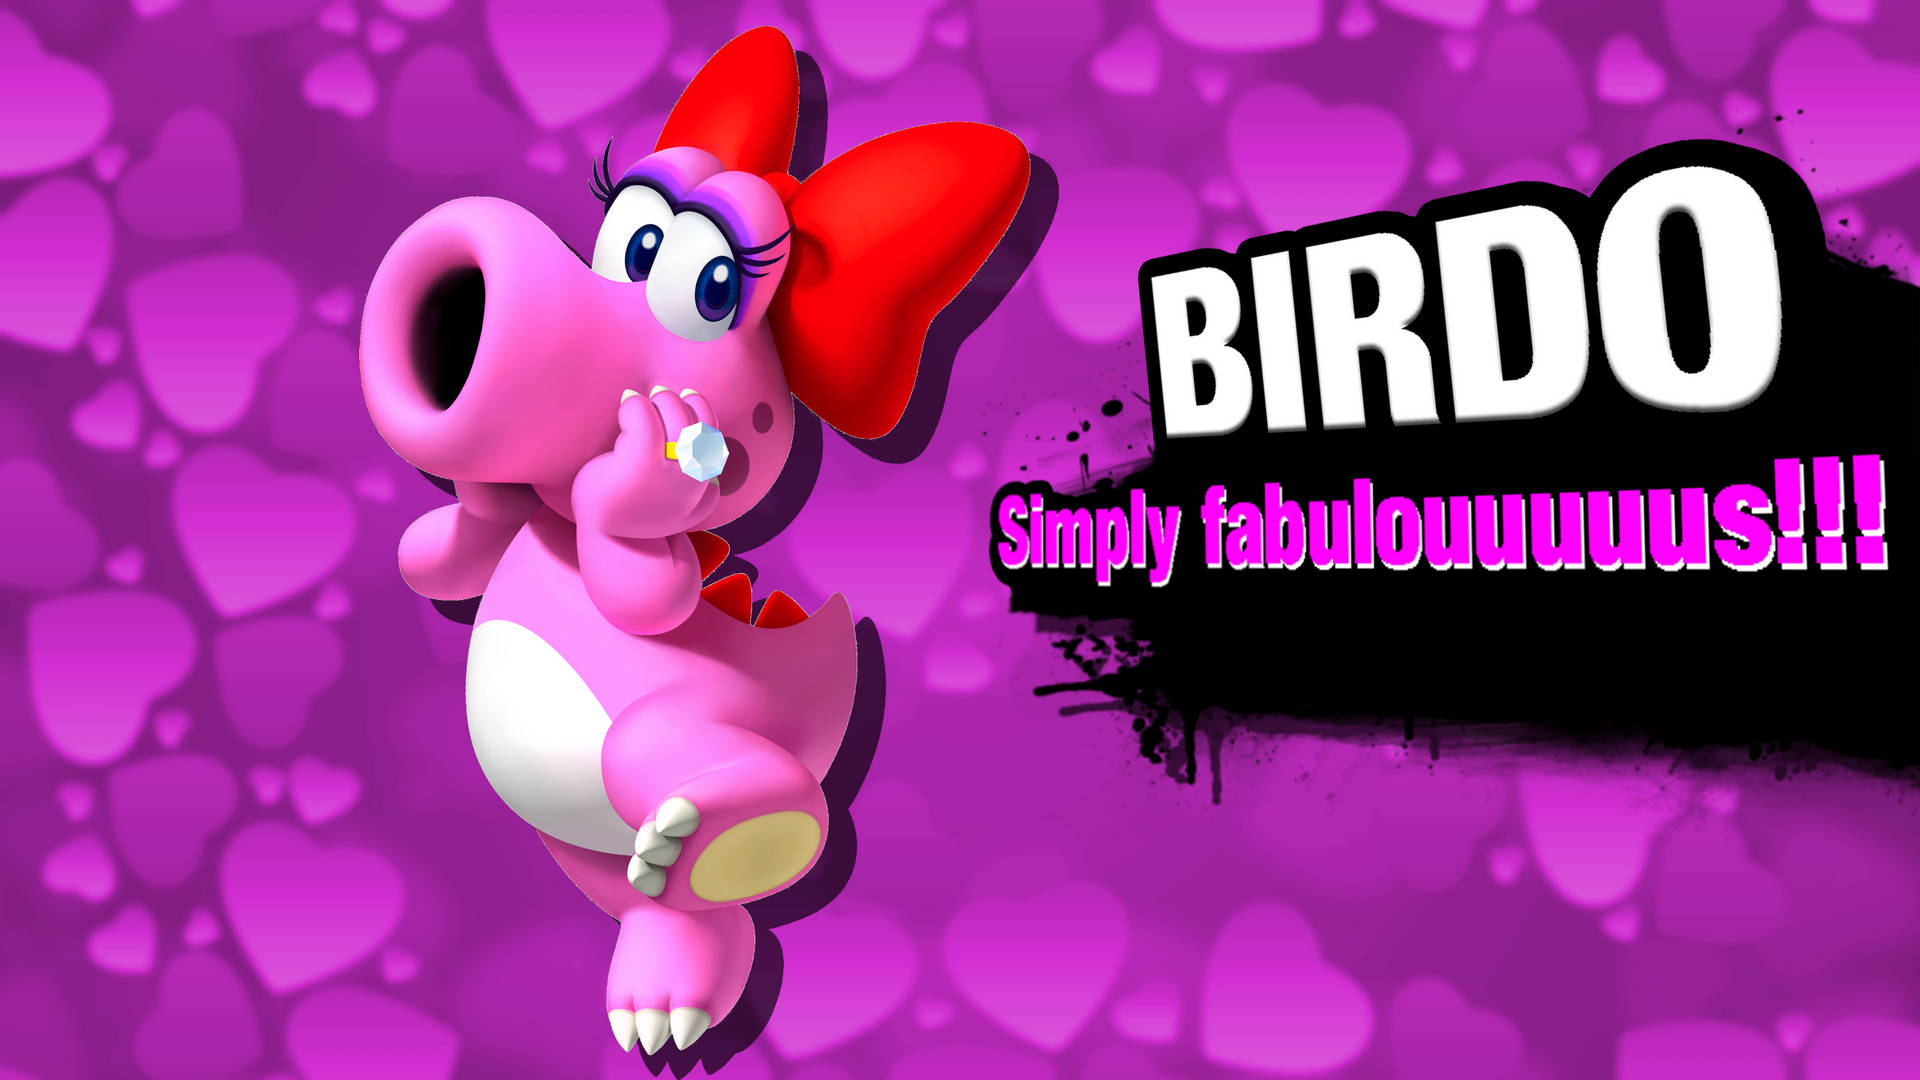 Birdo Nintendo Character Plakat Wallpaper